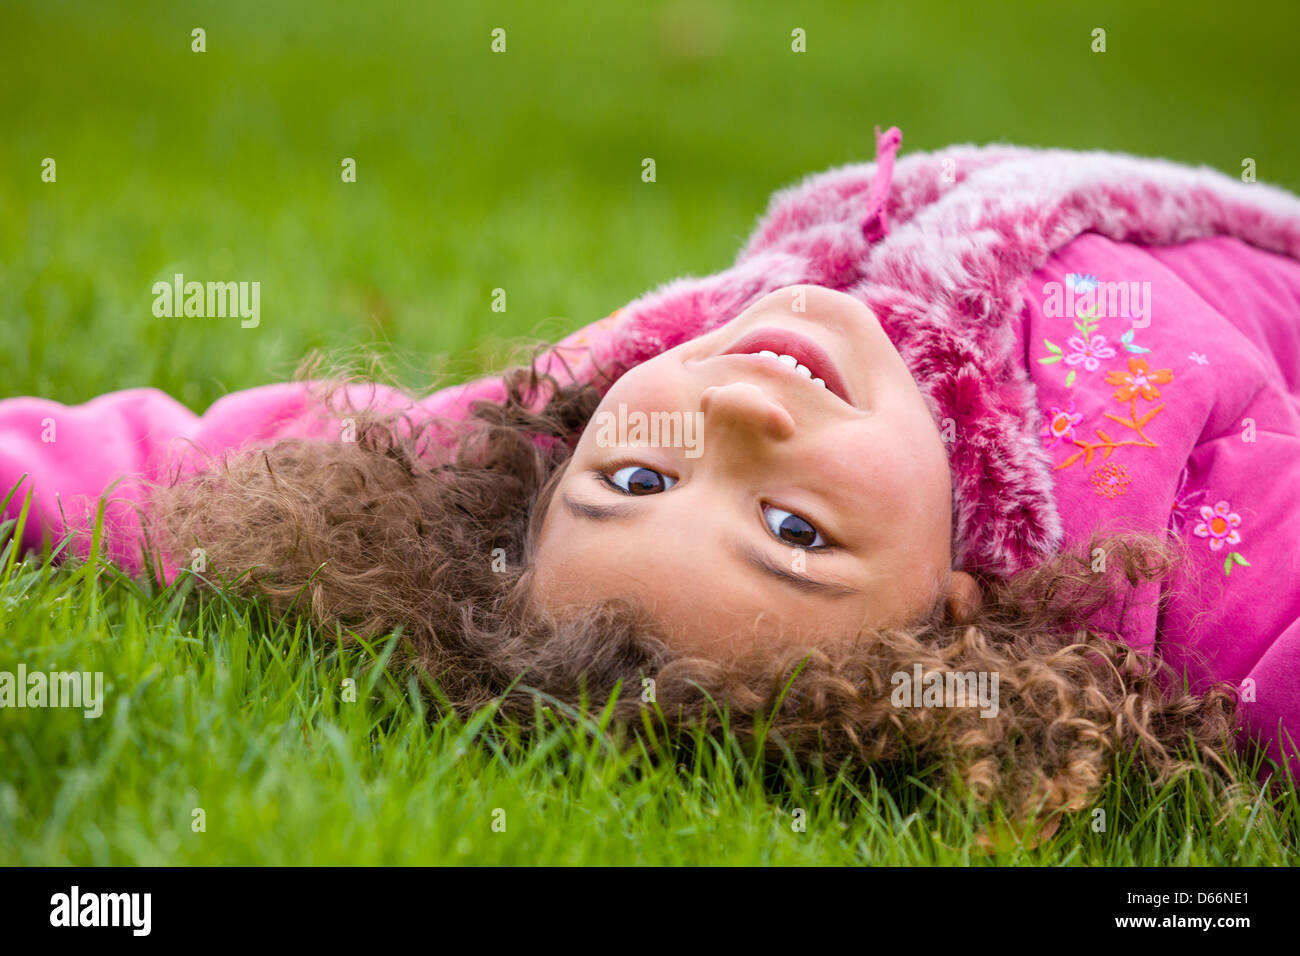 Junge Mädchen gemischter Rasse, in einem rosa Top, auf dem Gras liegend. Stockfoto